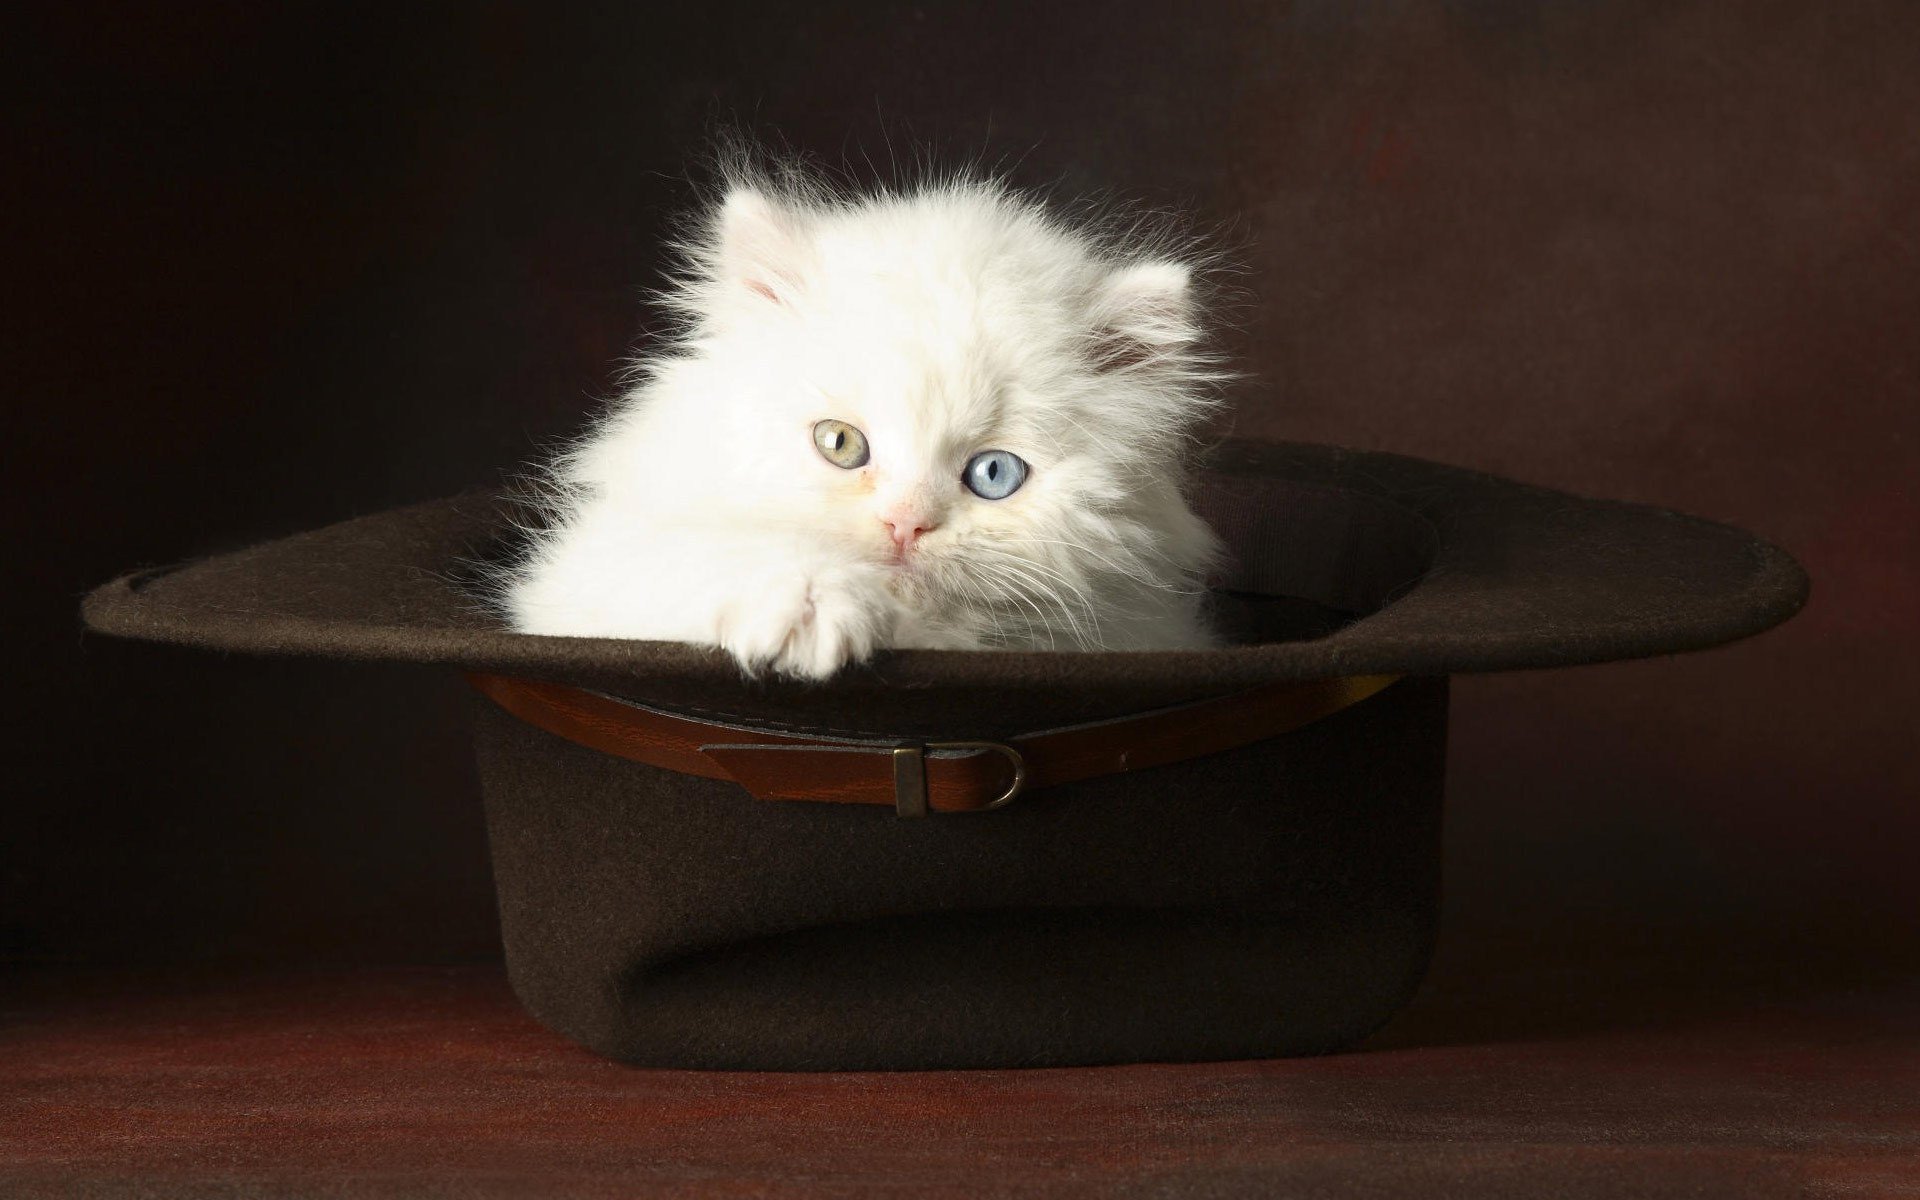 Белый пушистый котёнок с разными глазами сидит в чёрной шляпе